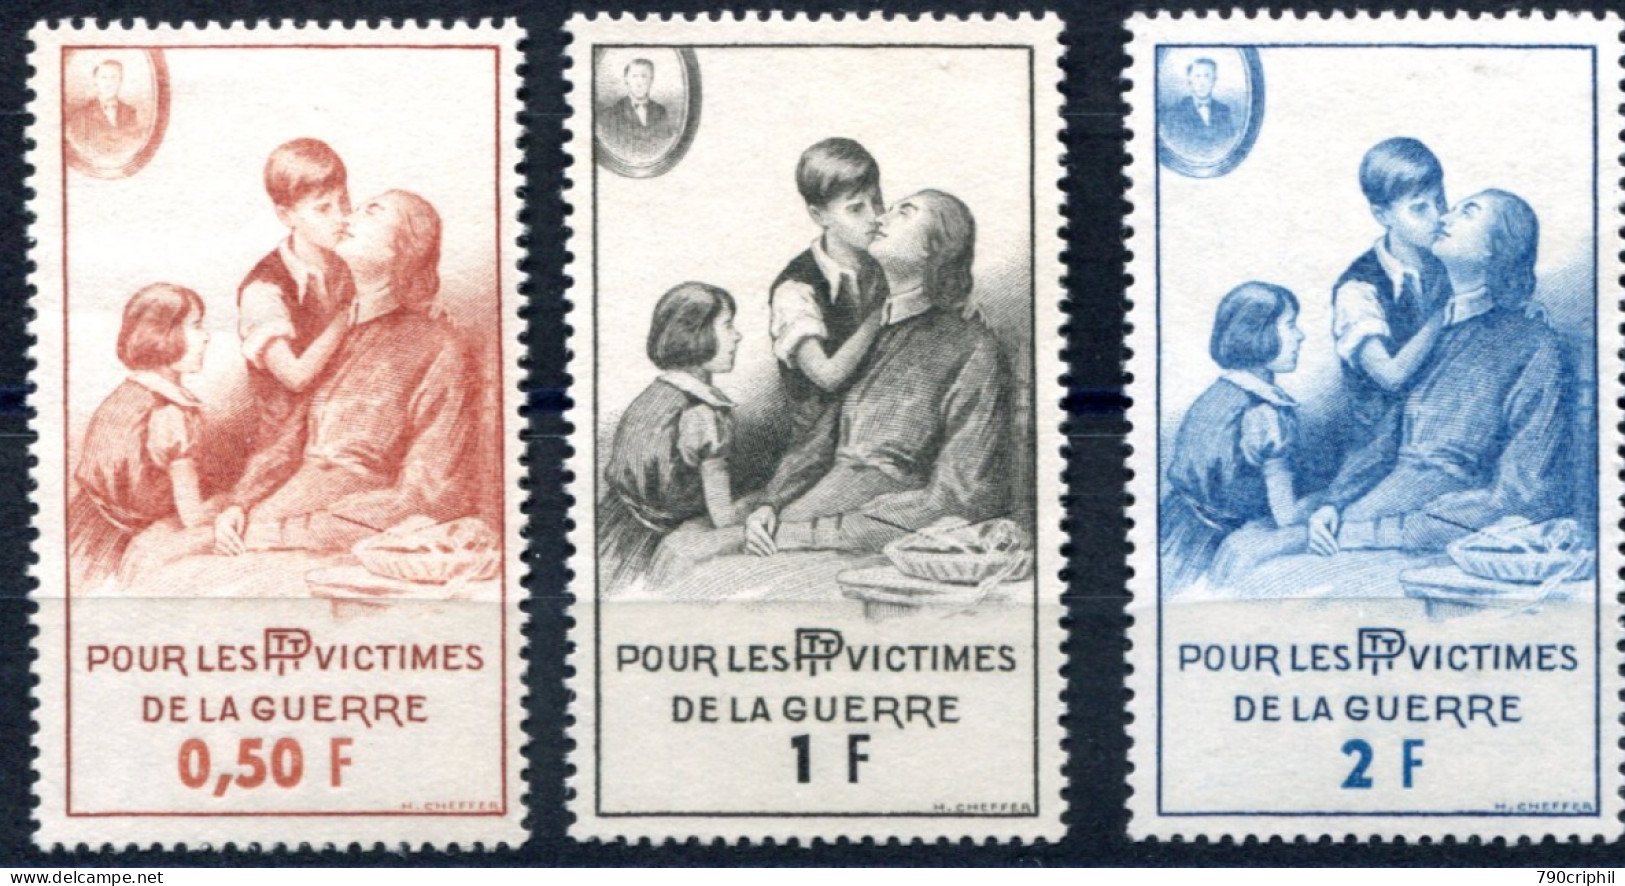 TIMBRES DE BIENFAISANCE Y&T N° 81.82.83" POUR LES P.T.T. VICTIMES DE LA GUERRE". Neuf LUXE** . A Saisir. - War Stamps